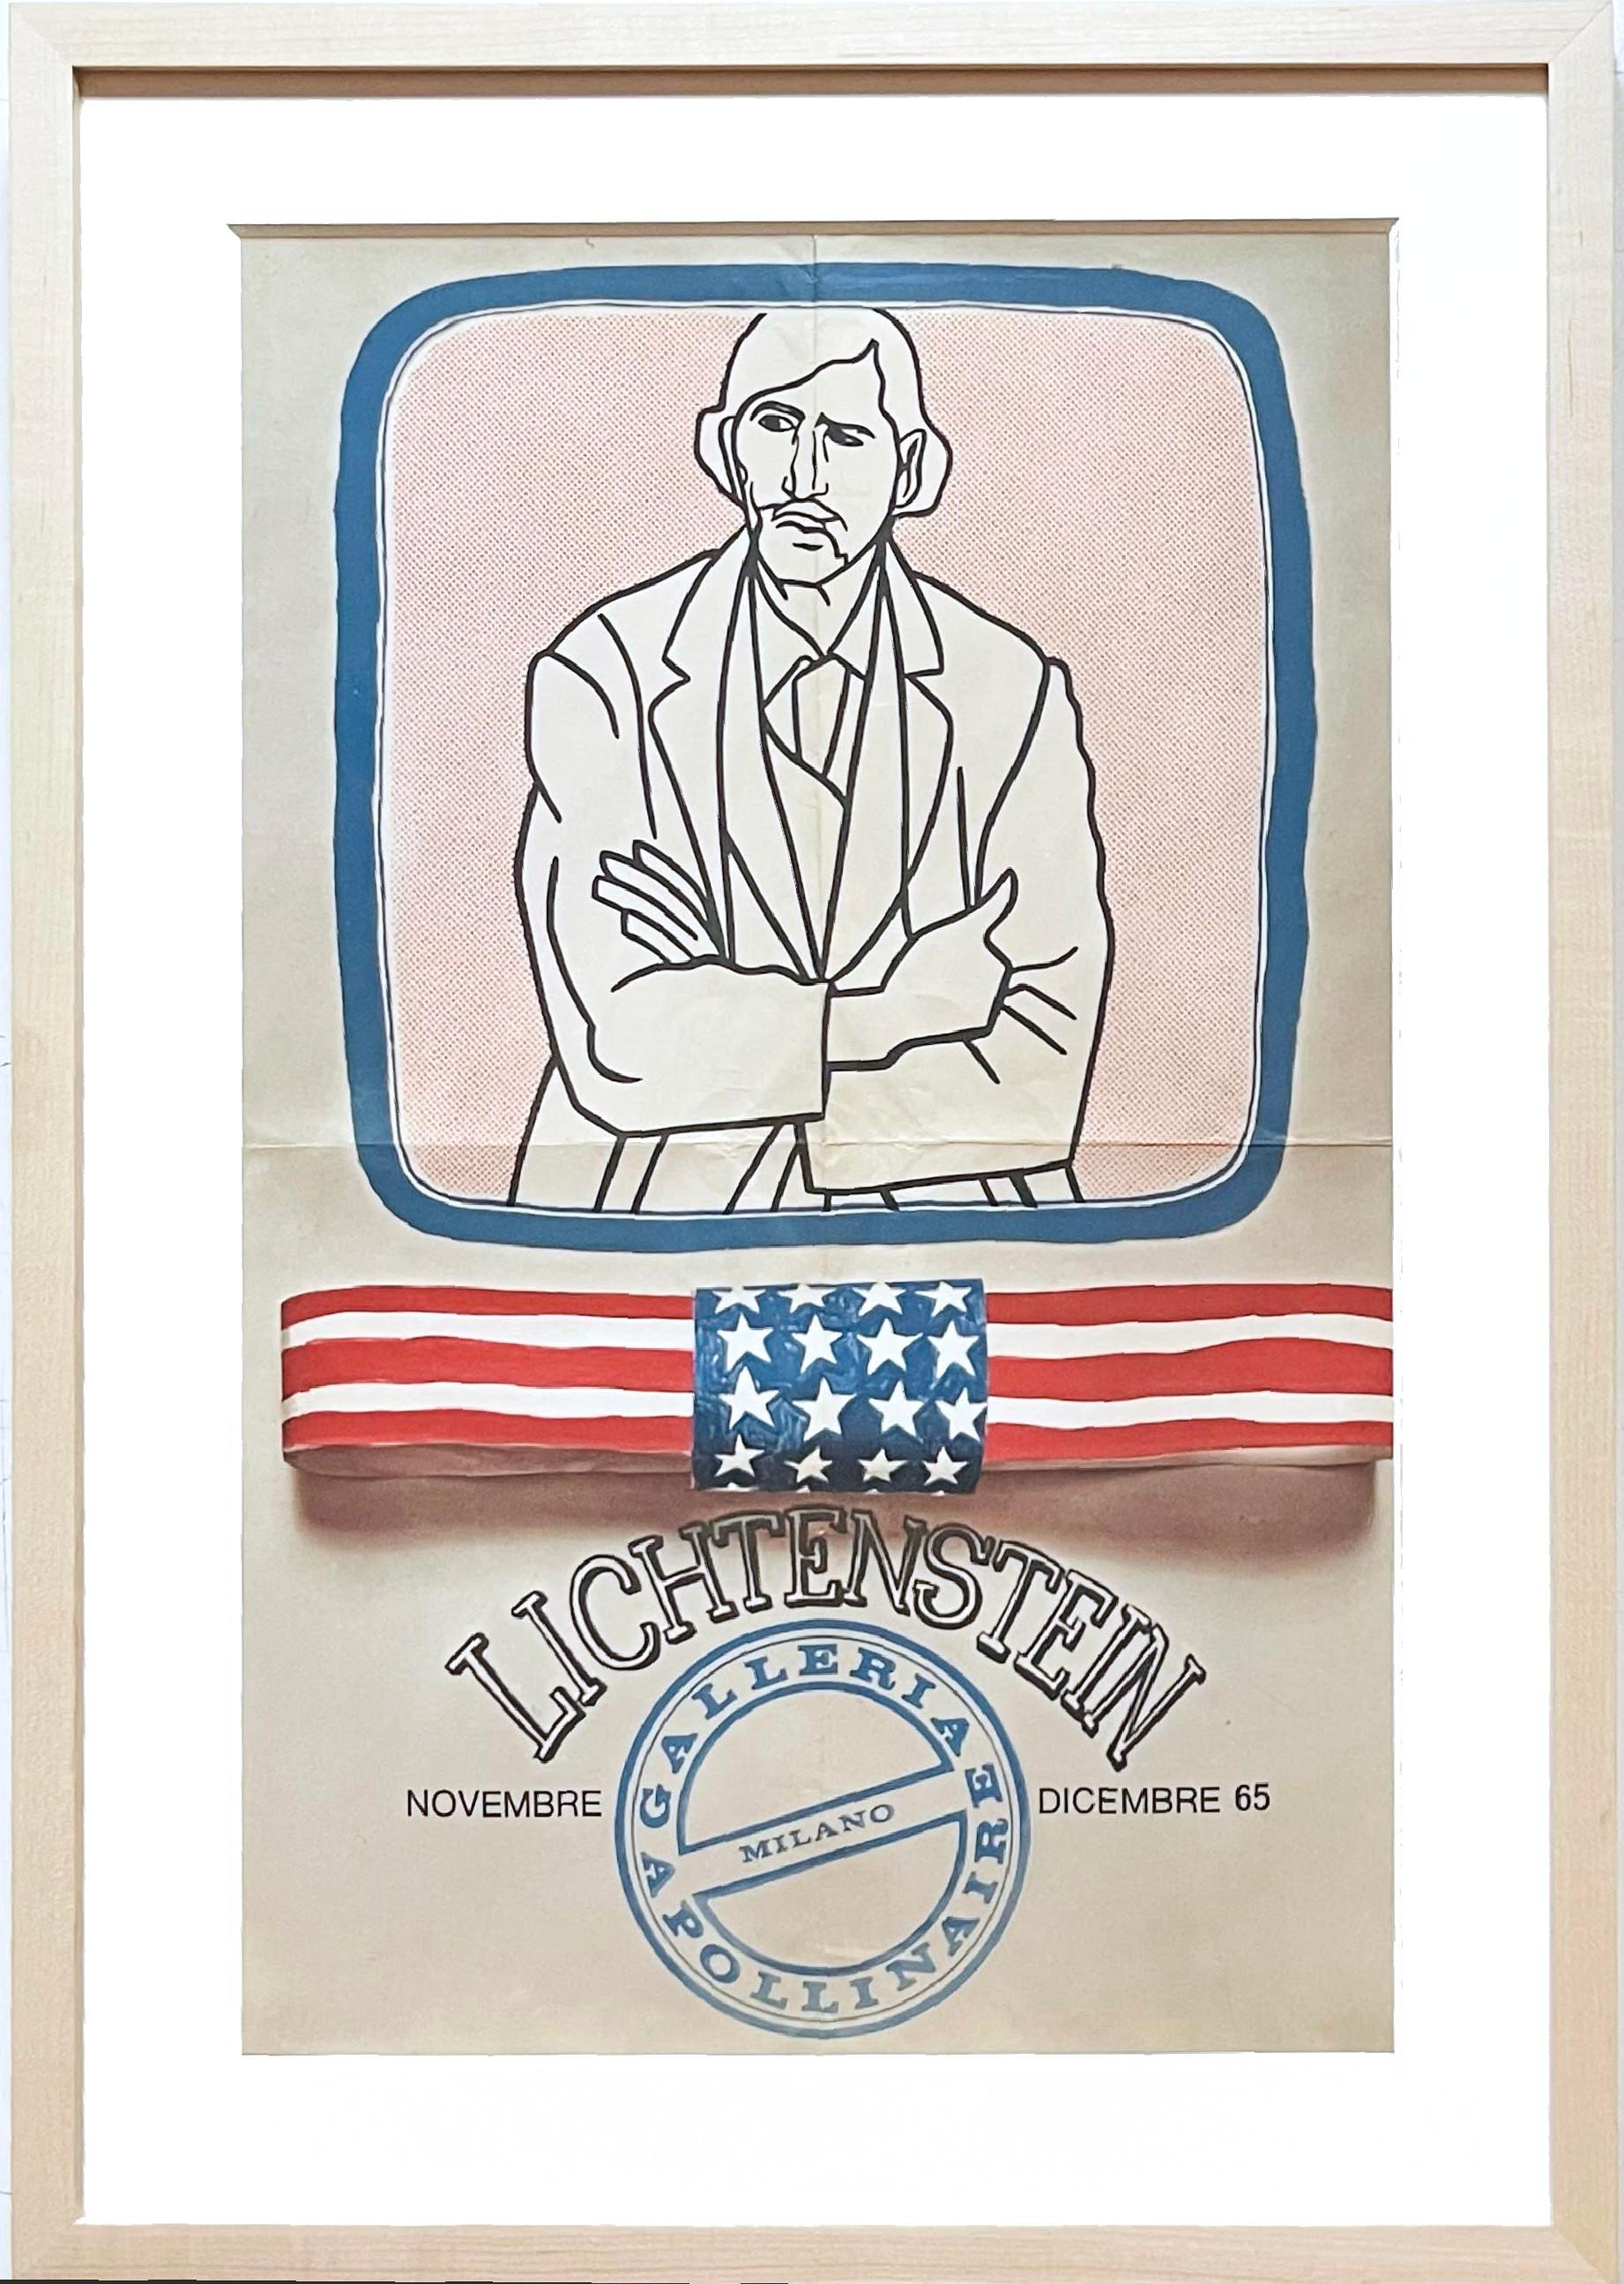 Roy Lichtenstein Abstract Print – Historische Ausstellungseinladung der 1960er Jahre für die Galleria Apollinaire